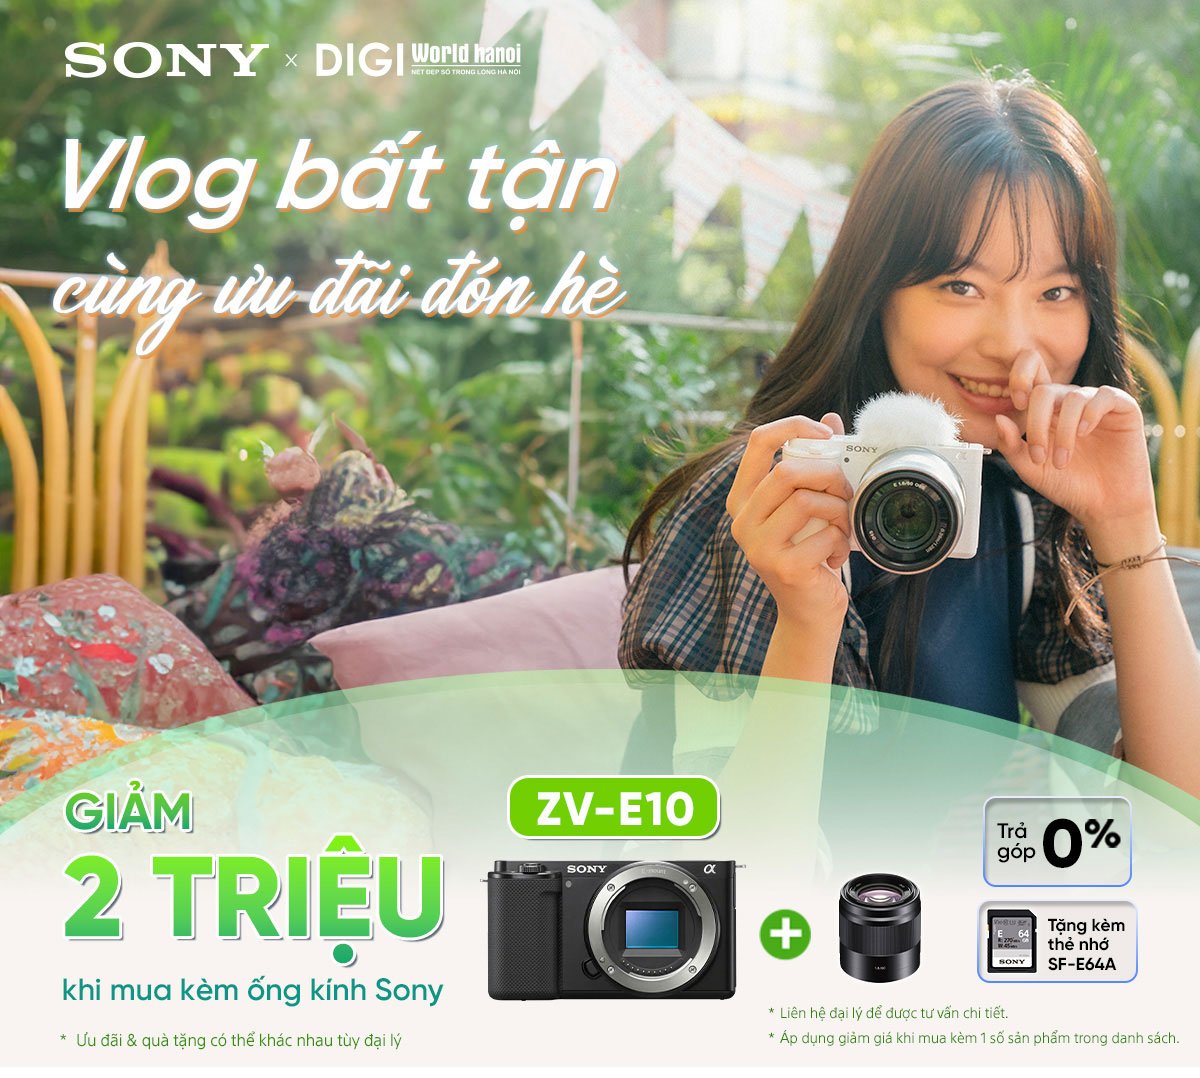 Vlog bất tận cùng ưu đãi hè, giảm 2 triệu đồng khi mua Sony ZV-E10 kèm ống kính tại Digiworld Hà Nội!